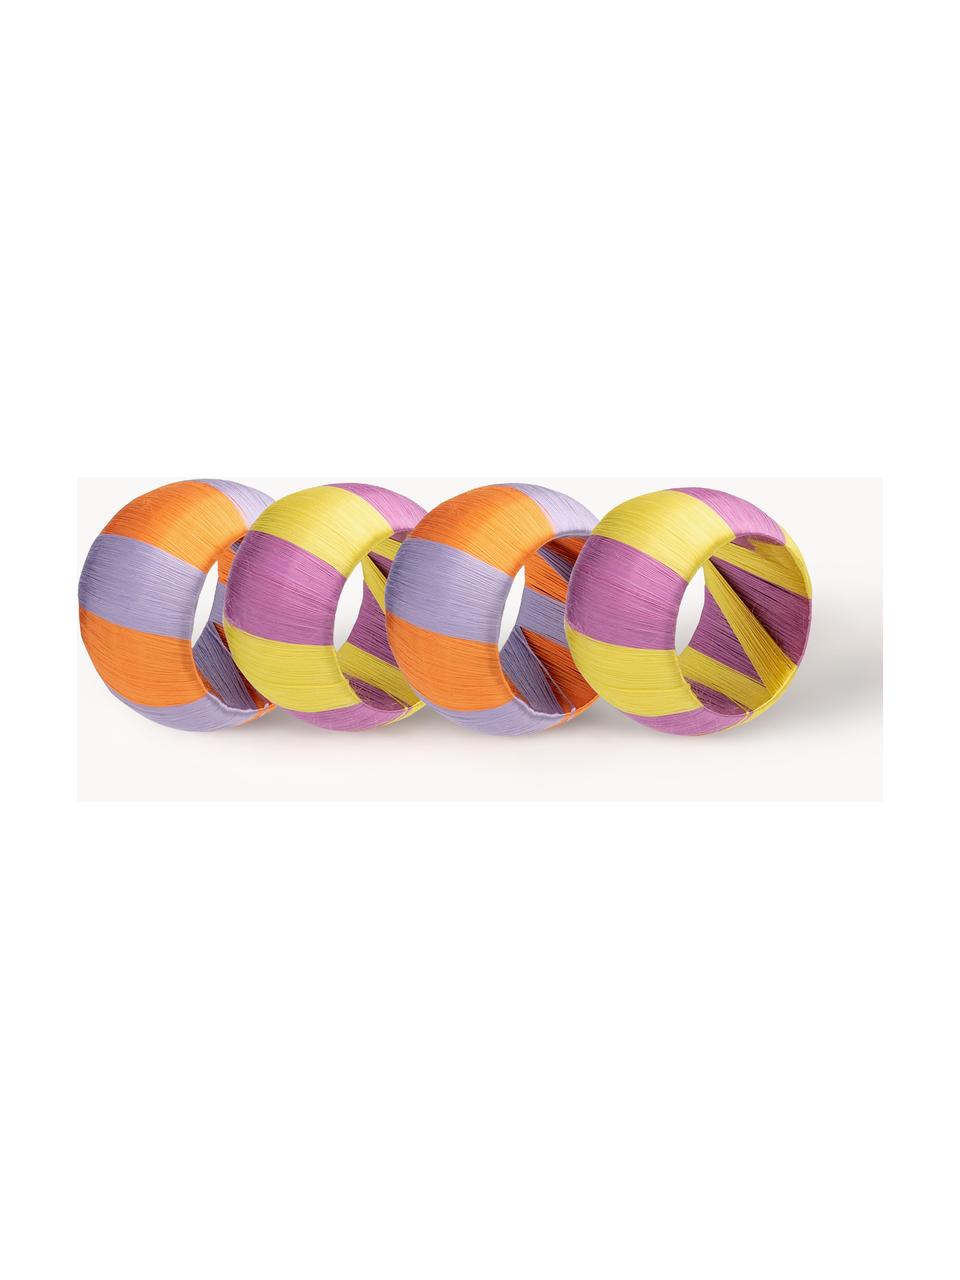 Súprava krúžkov na obrúsky Violette, 4 ks, Viskóza, plast, Fialová, levanduľová, svetložltá, oranžová, Ø 5 cm